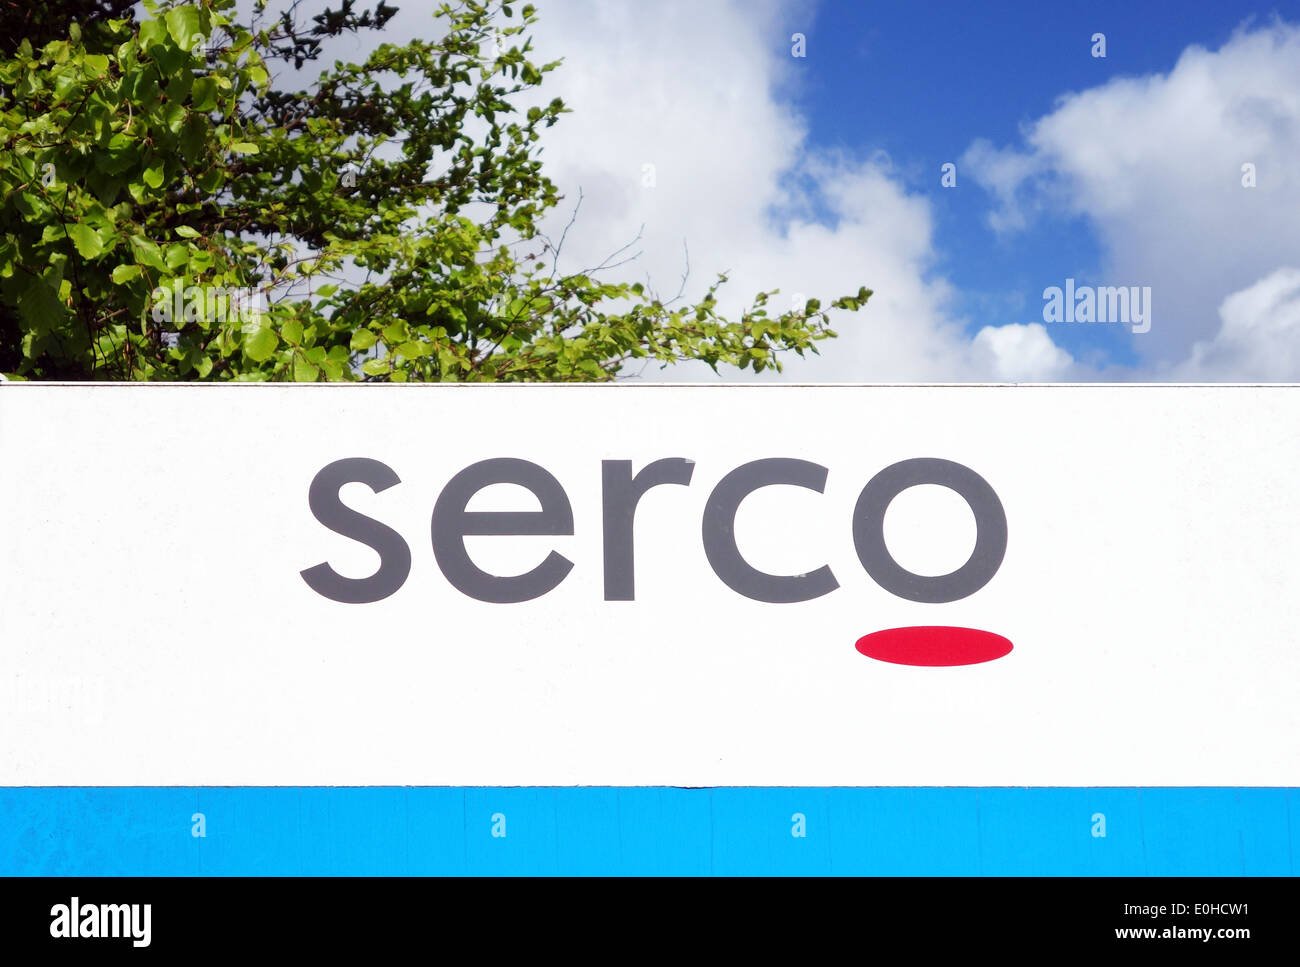 Serco company logo Stock Photo